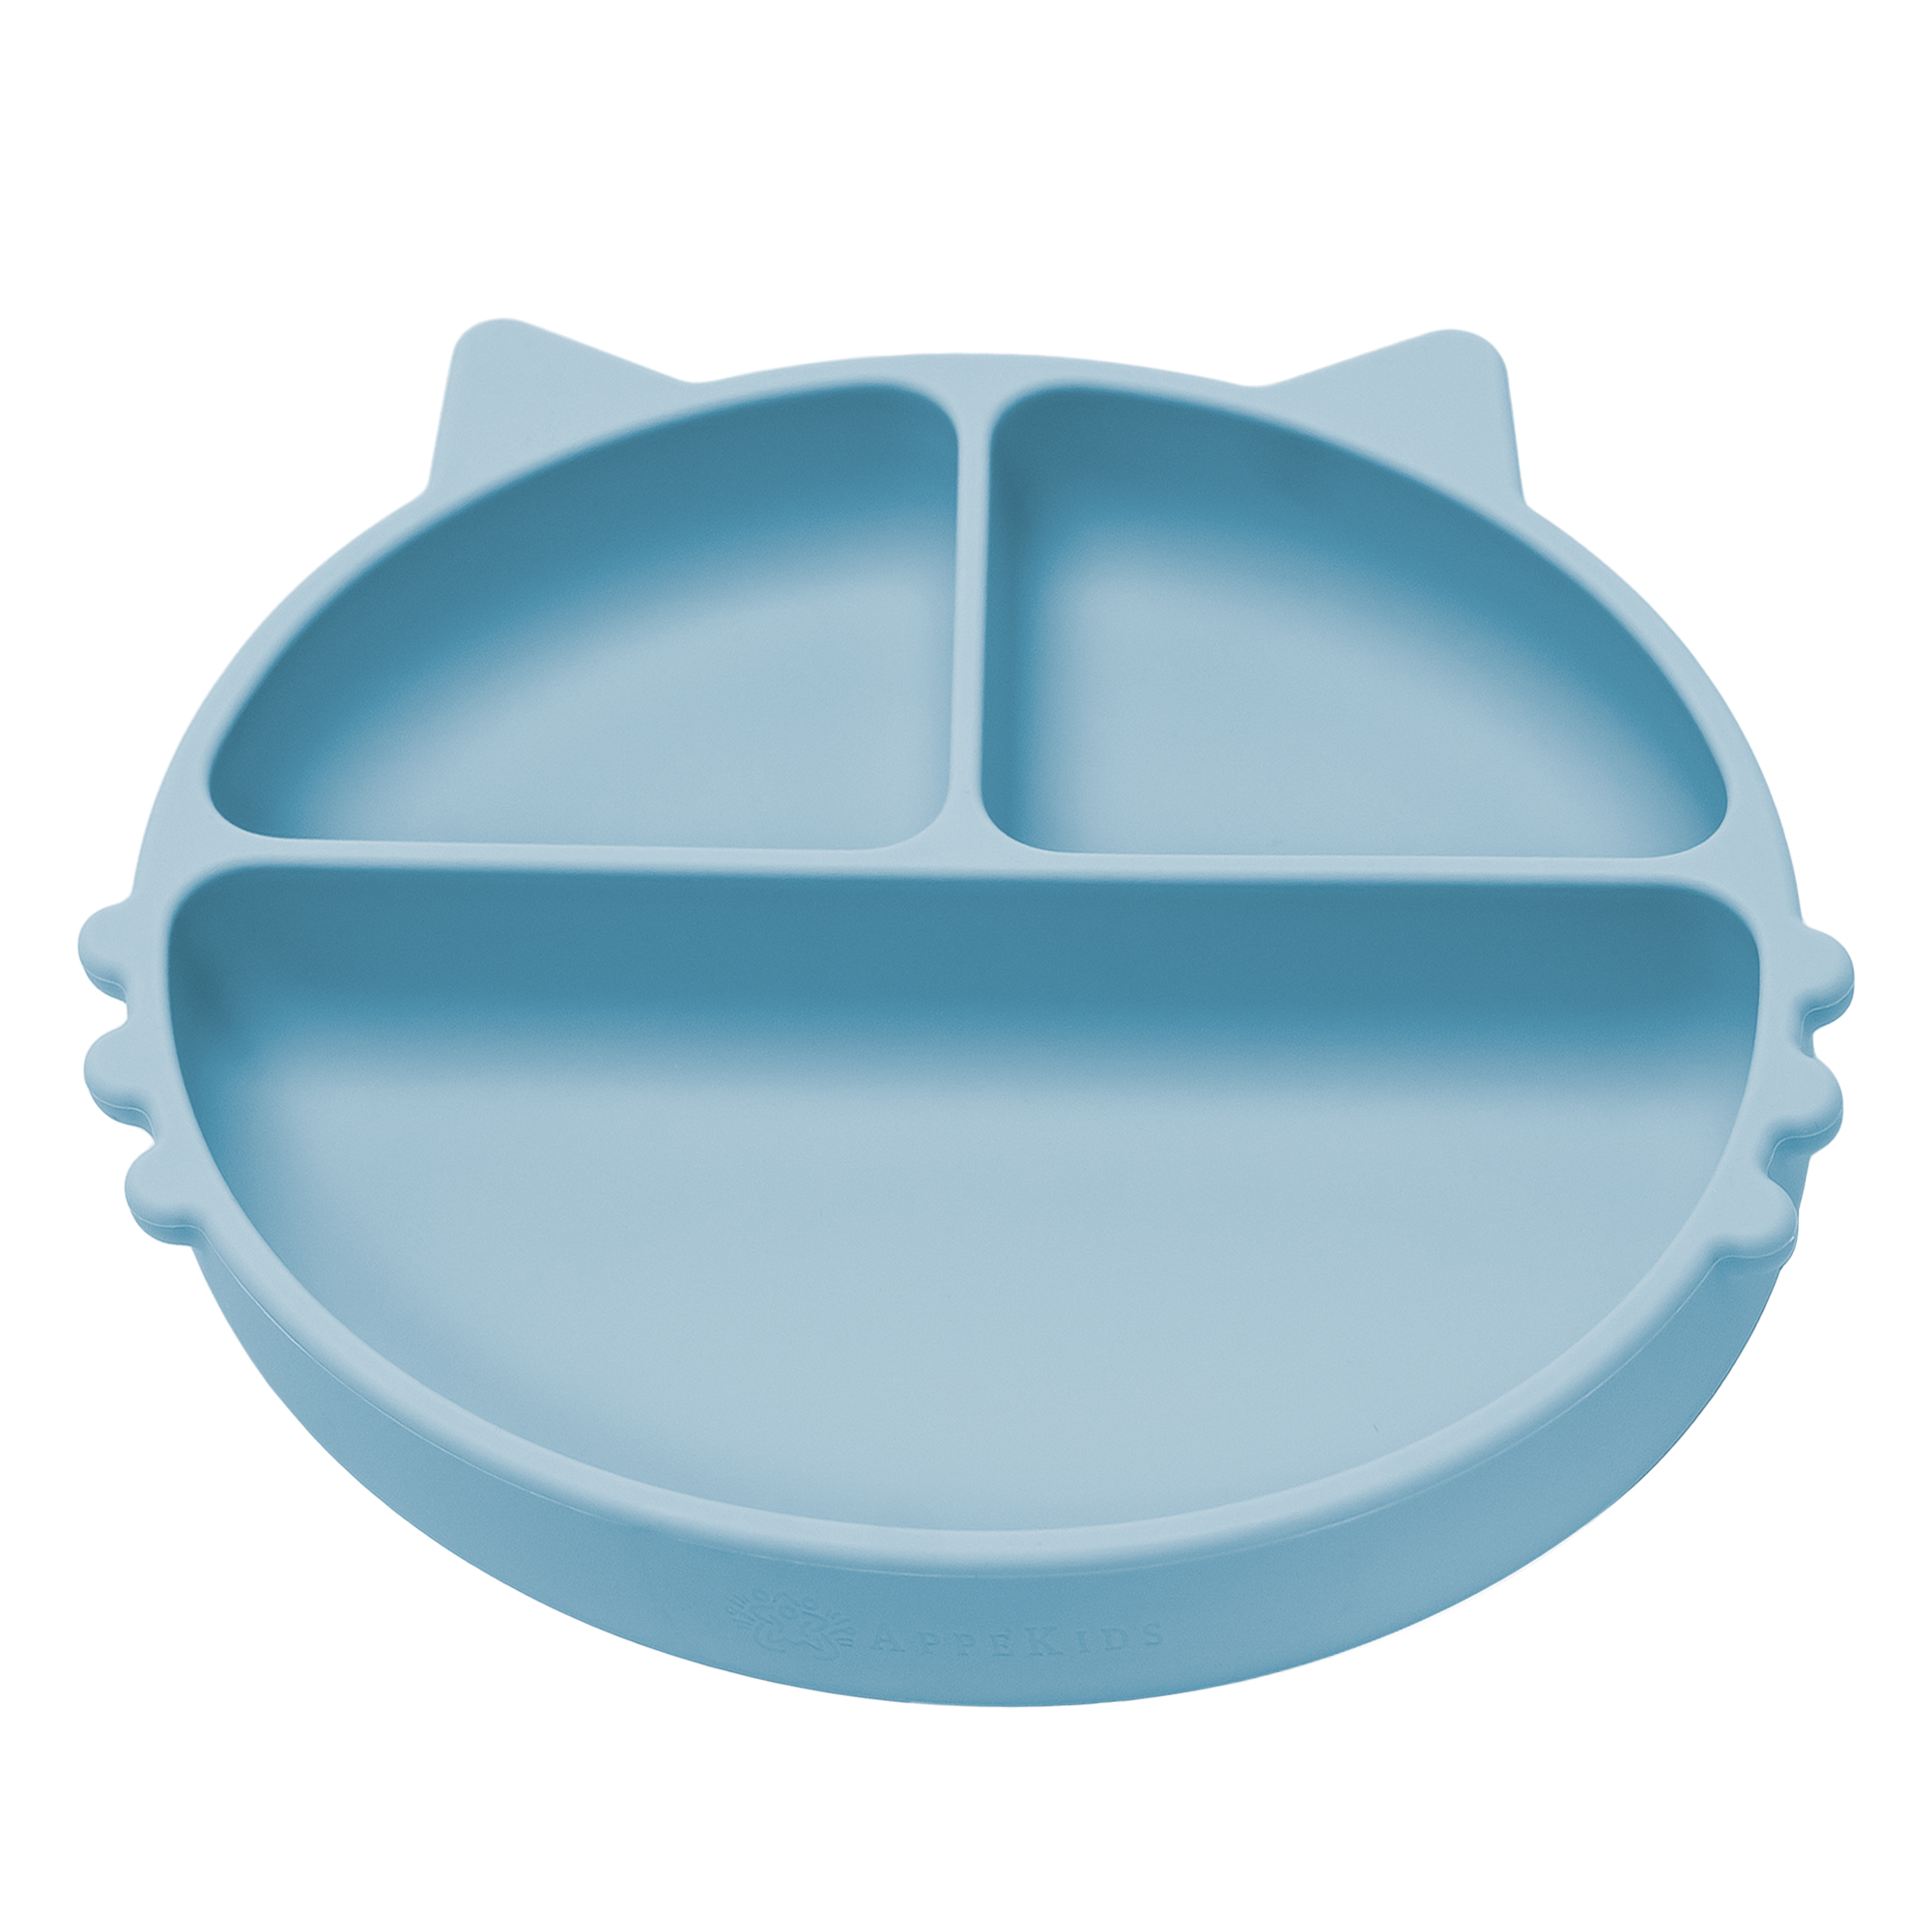 Castroane si farfurii - Appekids Farfurie Kitty compartimentata din silicon cu ventuza culoare Aqua Blue, medik-on.ro